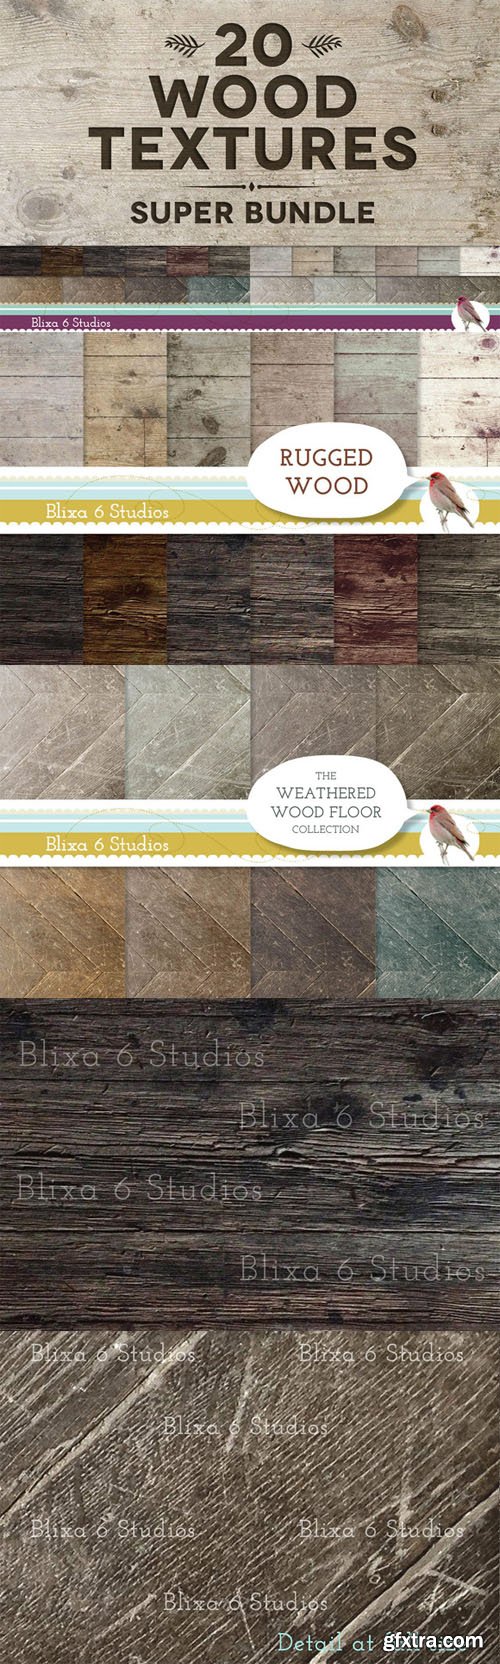 20 Wood Textures Super Bundle - CM 27442